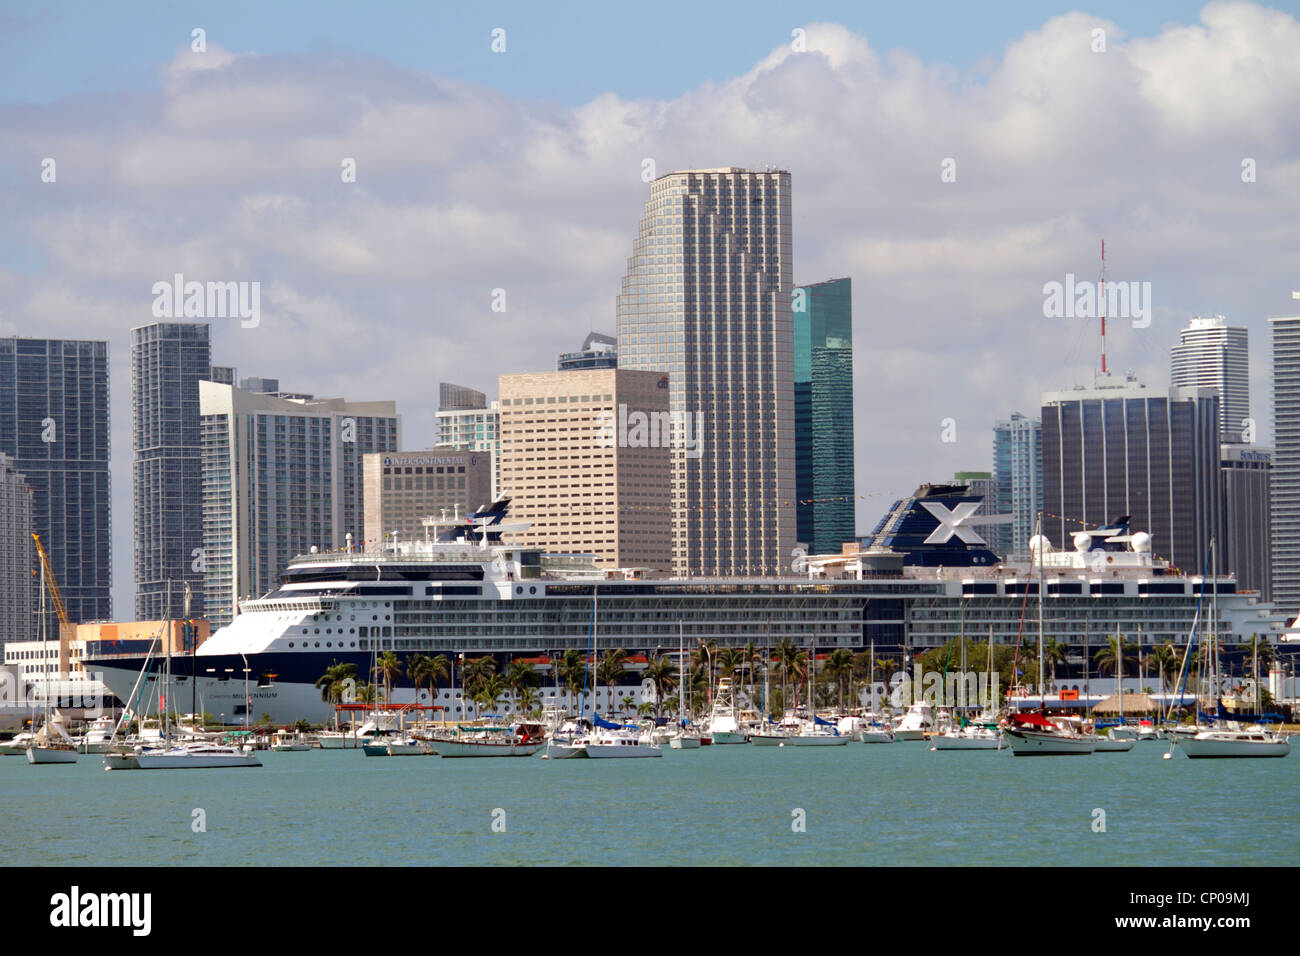 Miami Florida, Biscayne Bay, Celebrity Millennium. Kreuzfahrt-Schiff, Celebrity Cruises, Hafen von Miami, Skyline der Innenstadt, Bürogebäude, Skyline der Stadt, Hotel Stockfoto